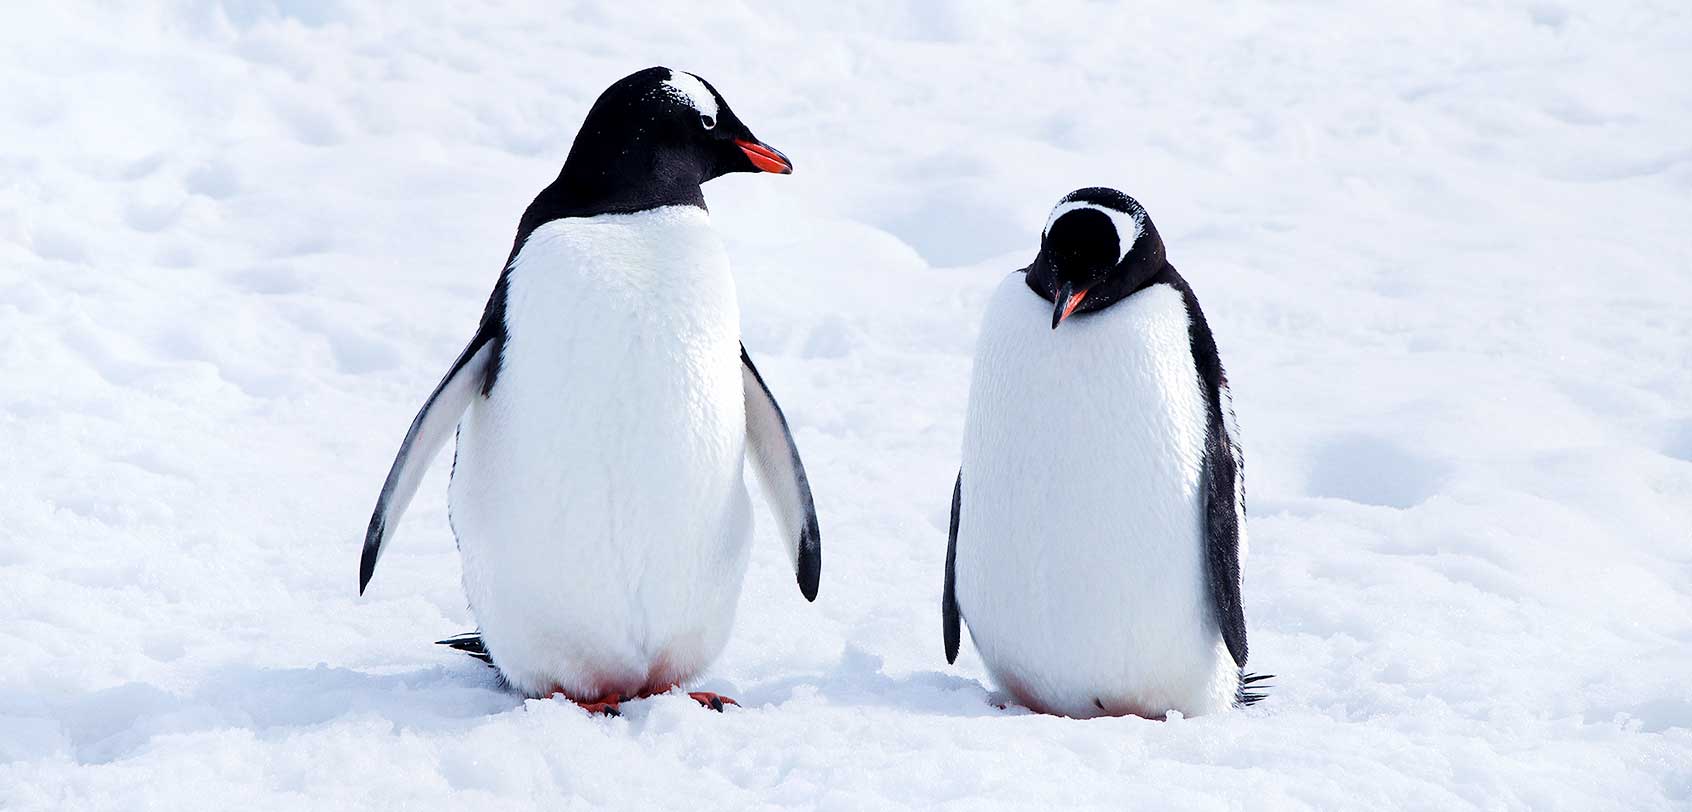 Antarctic Animals: Wildlife to Spot During an Antarctica Cruise